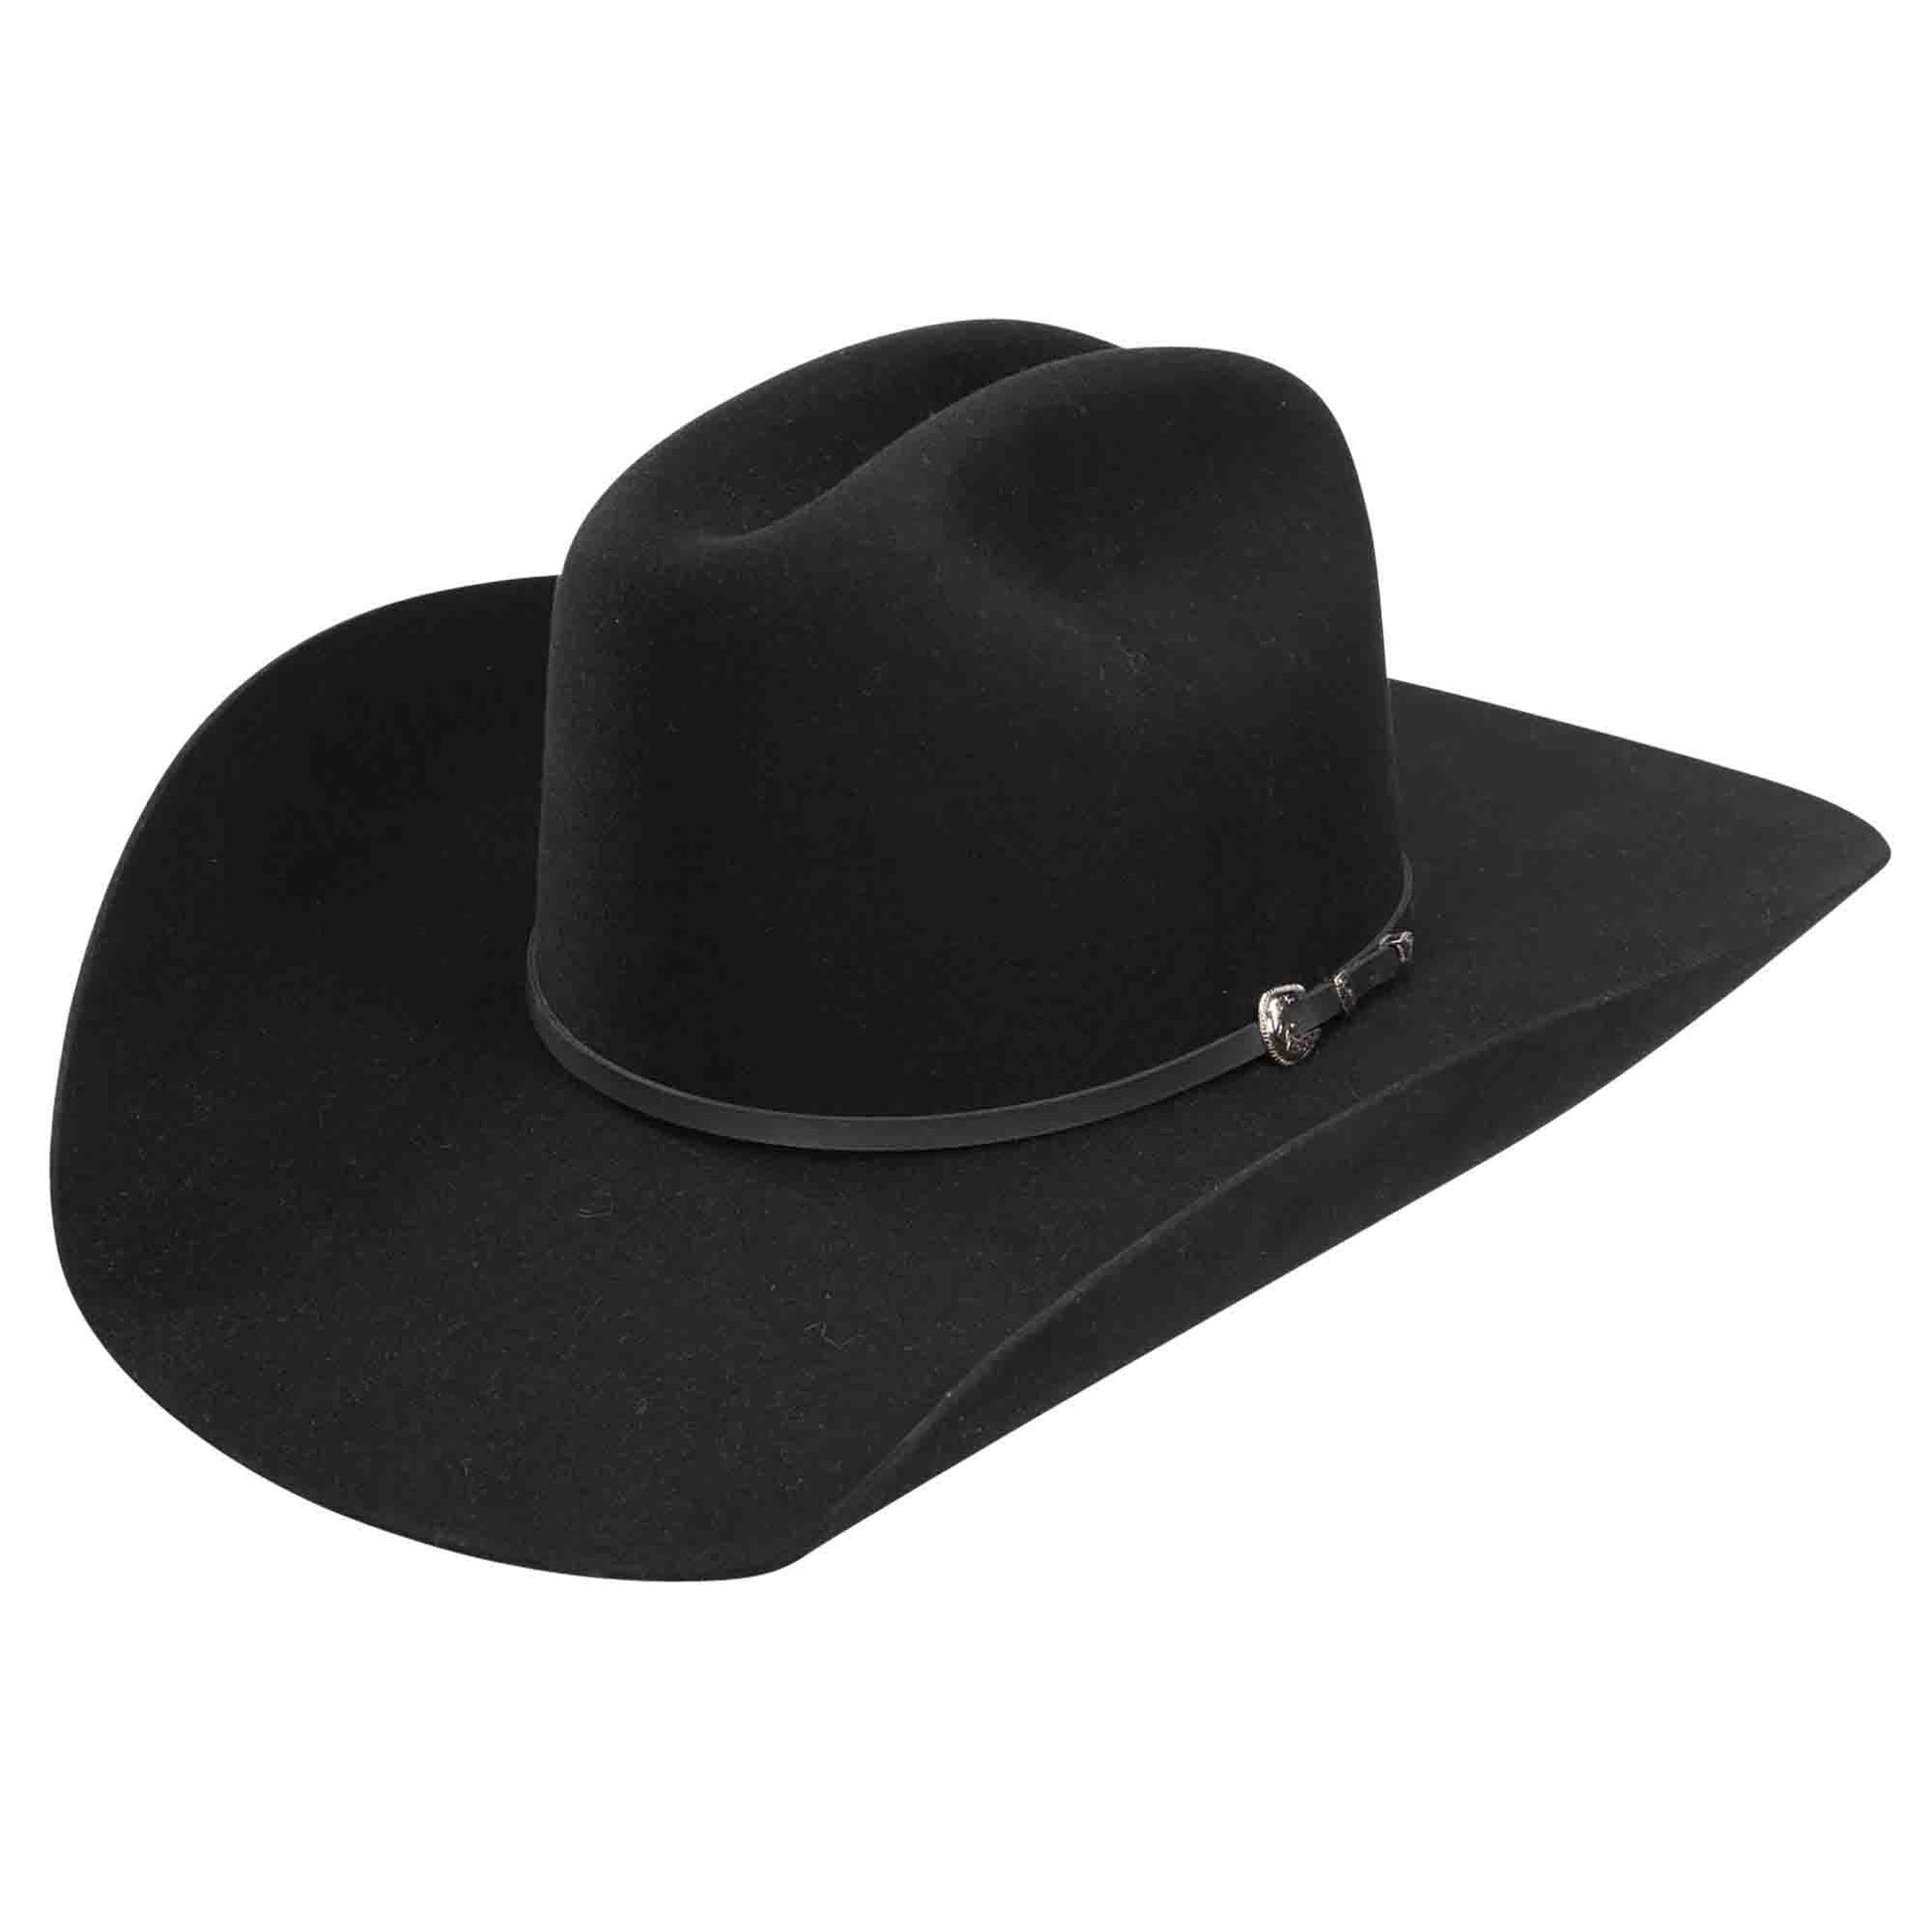 Resistol Bankston Black Felt Hat